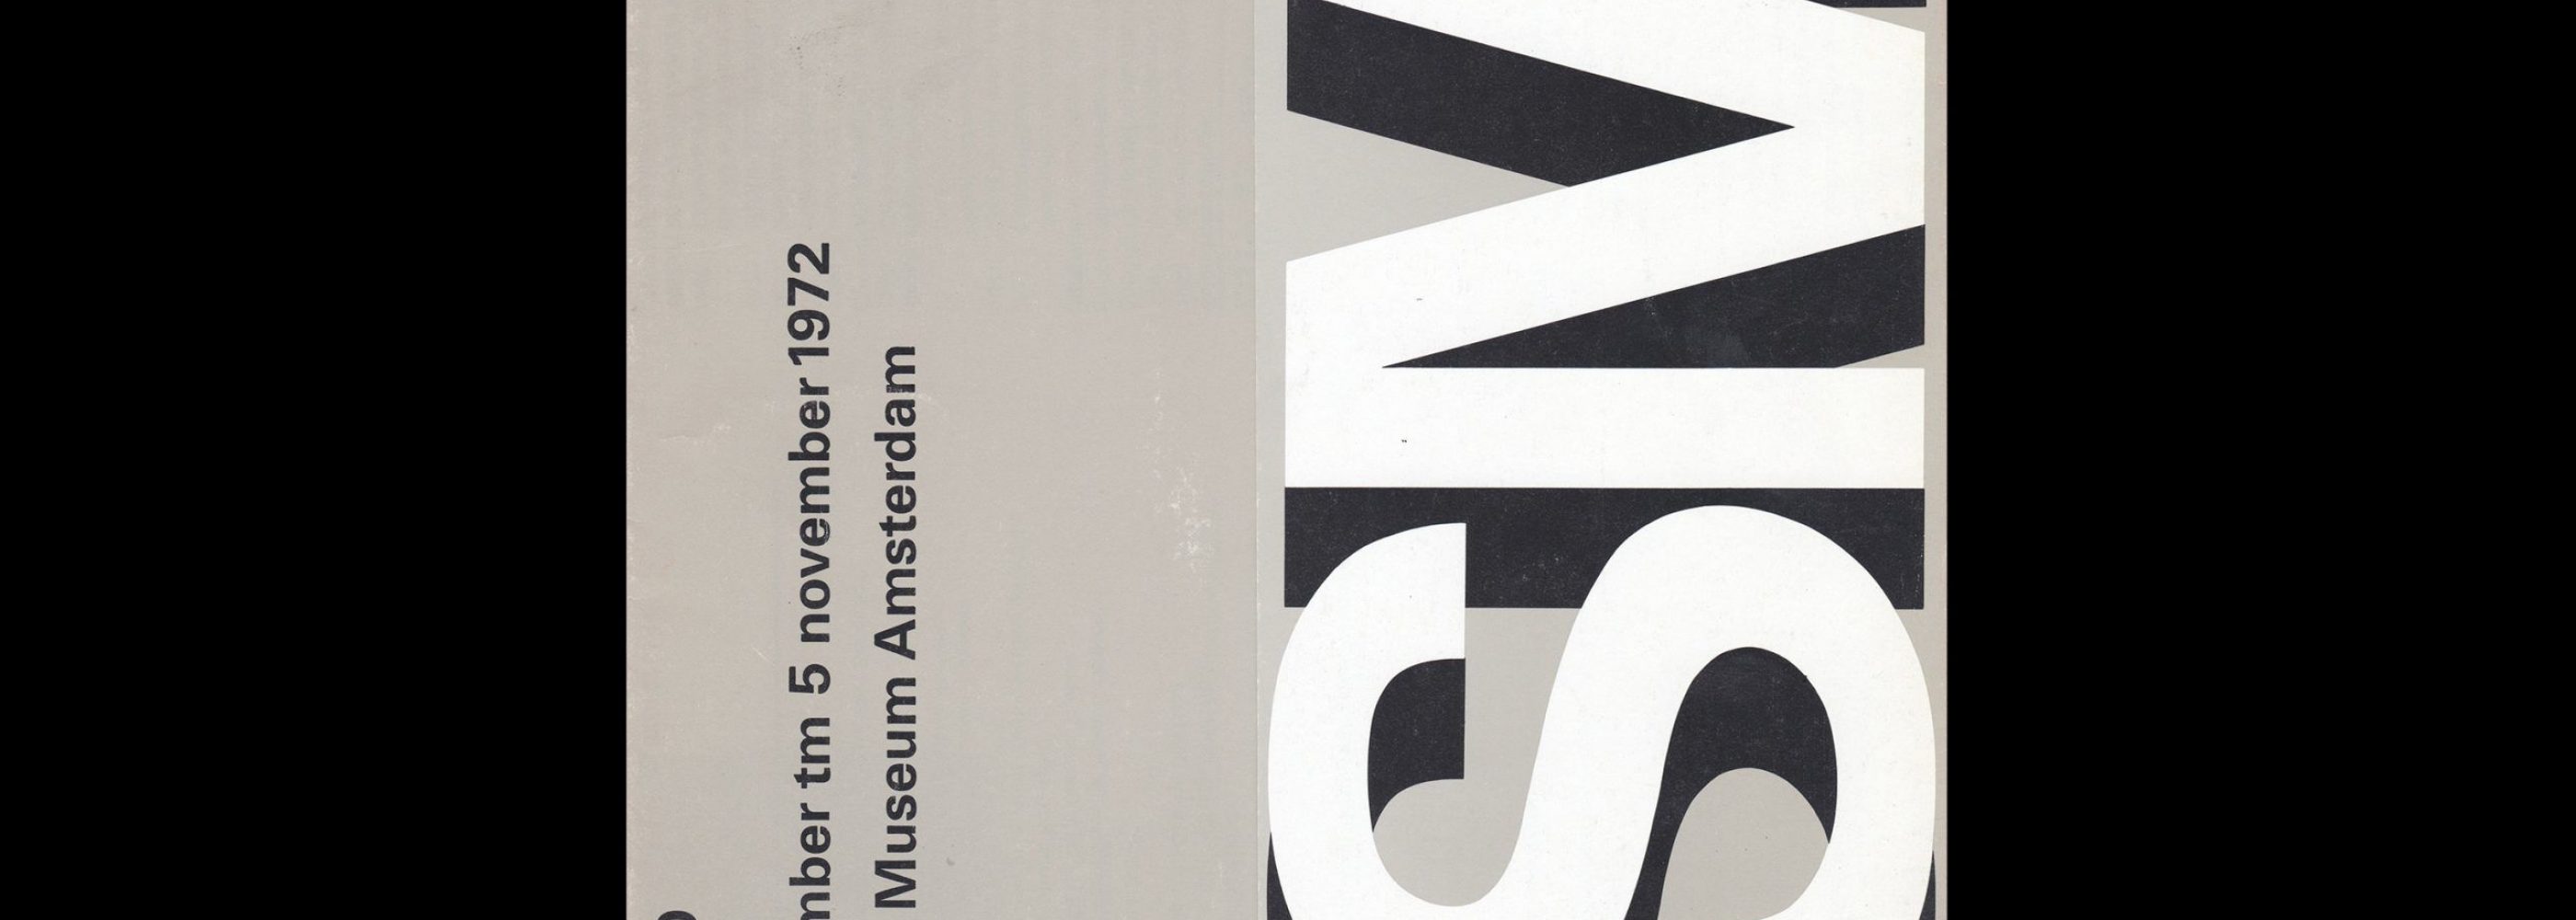 Atelier 10, Stedelijk Museum, Amsterdam, 1972 designed by Wim Crouwel and Jos van der Zwaan (Total Design)